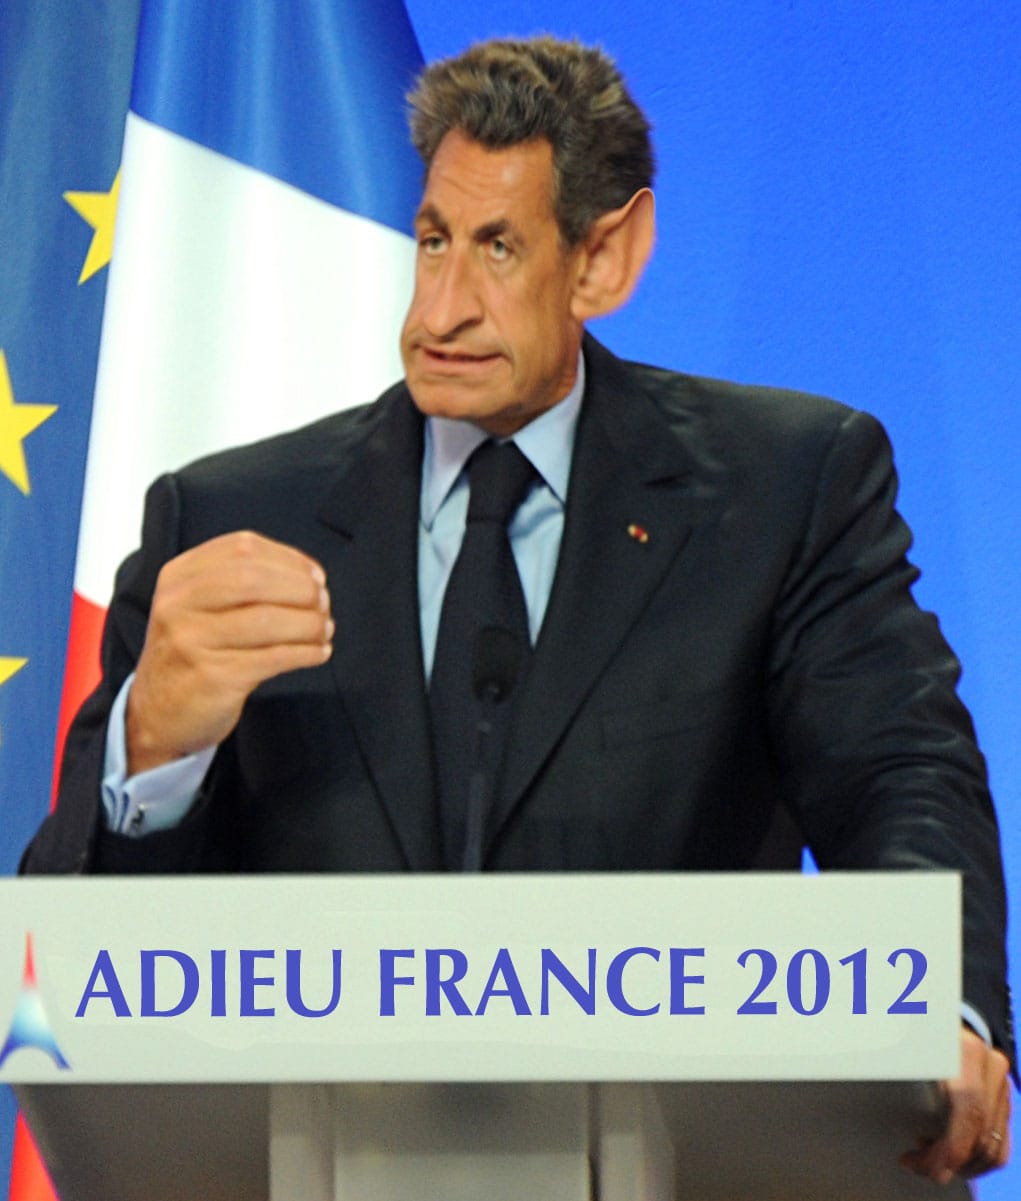 Sarkozy auf der Flucht - Asyl bei Merkel